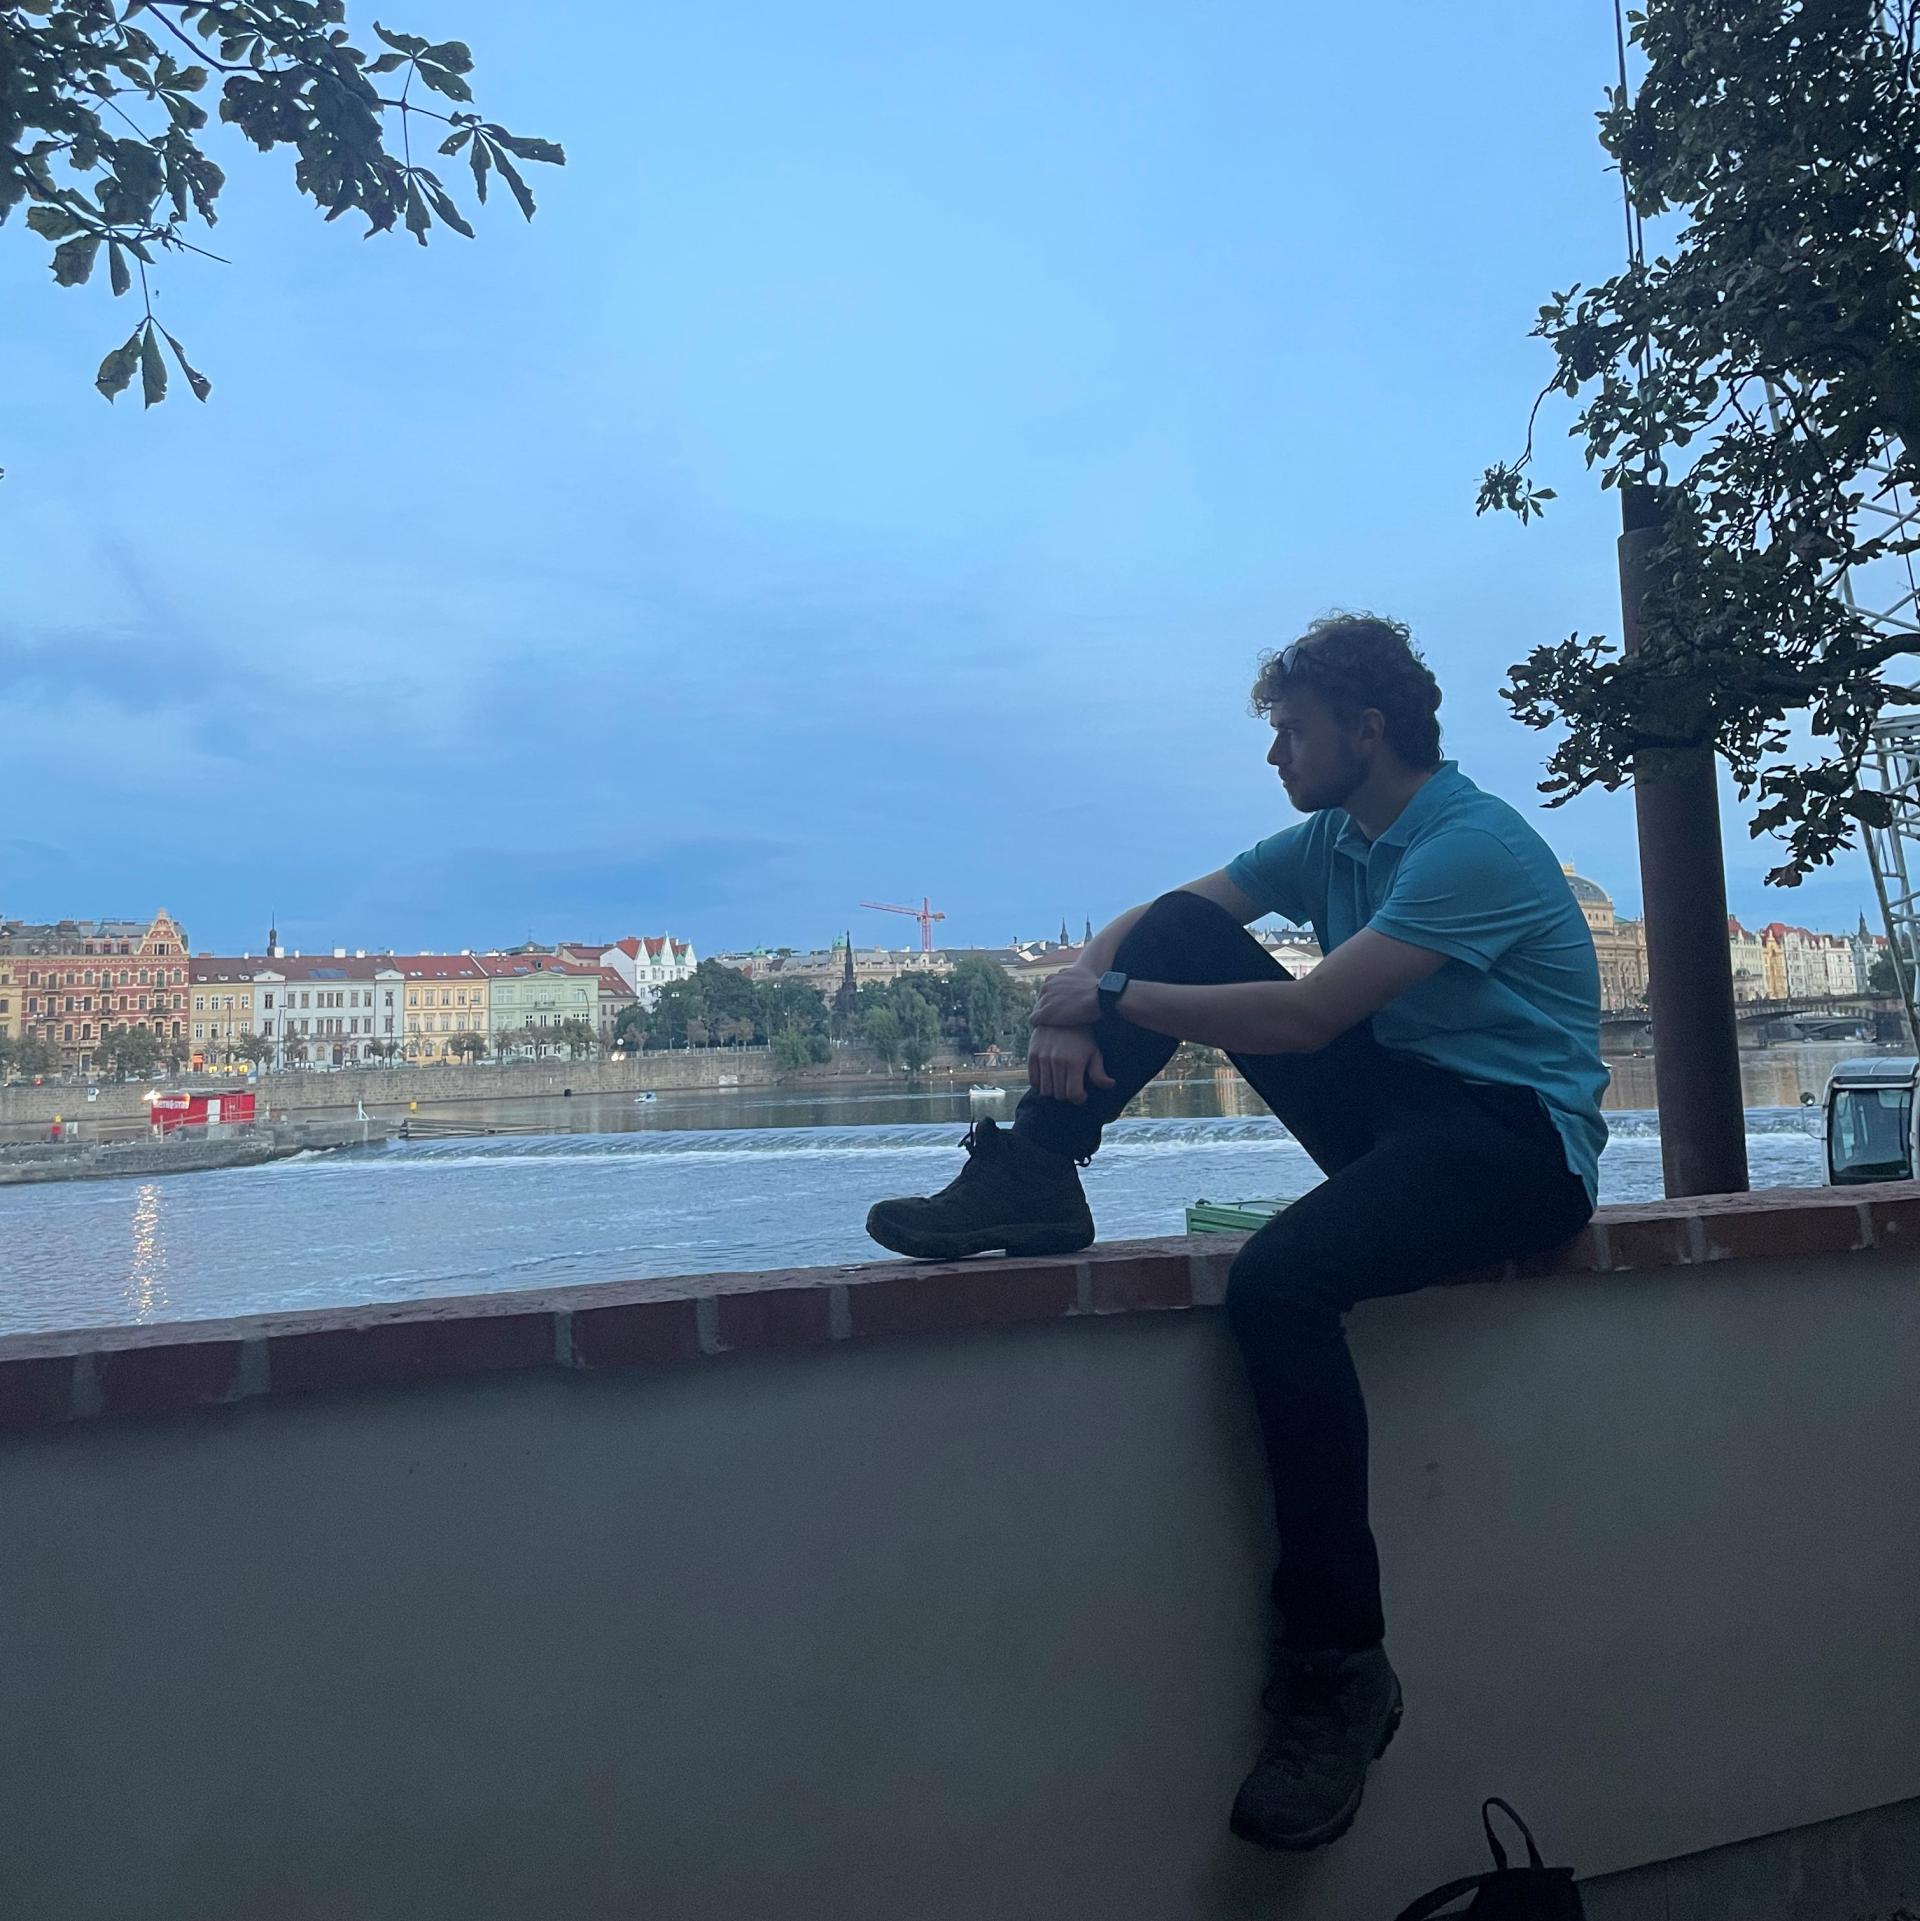 Luís zit met één been opgetrokken op een muurtje. Hij kijkt naar het uitzicht op de stad, met daarvoor een rivier.